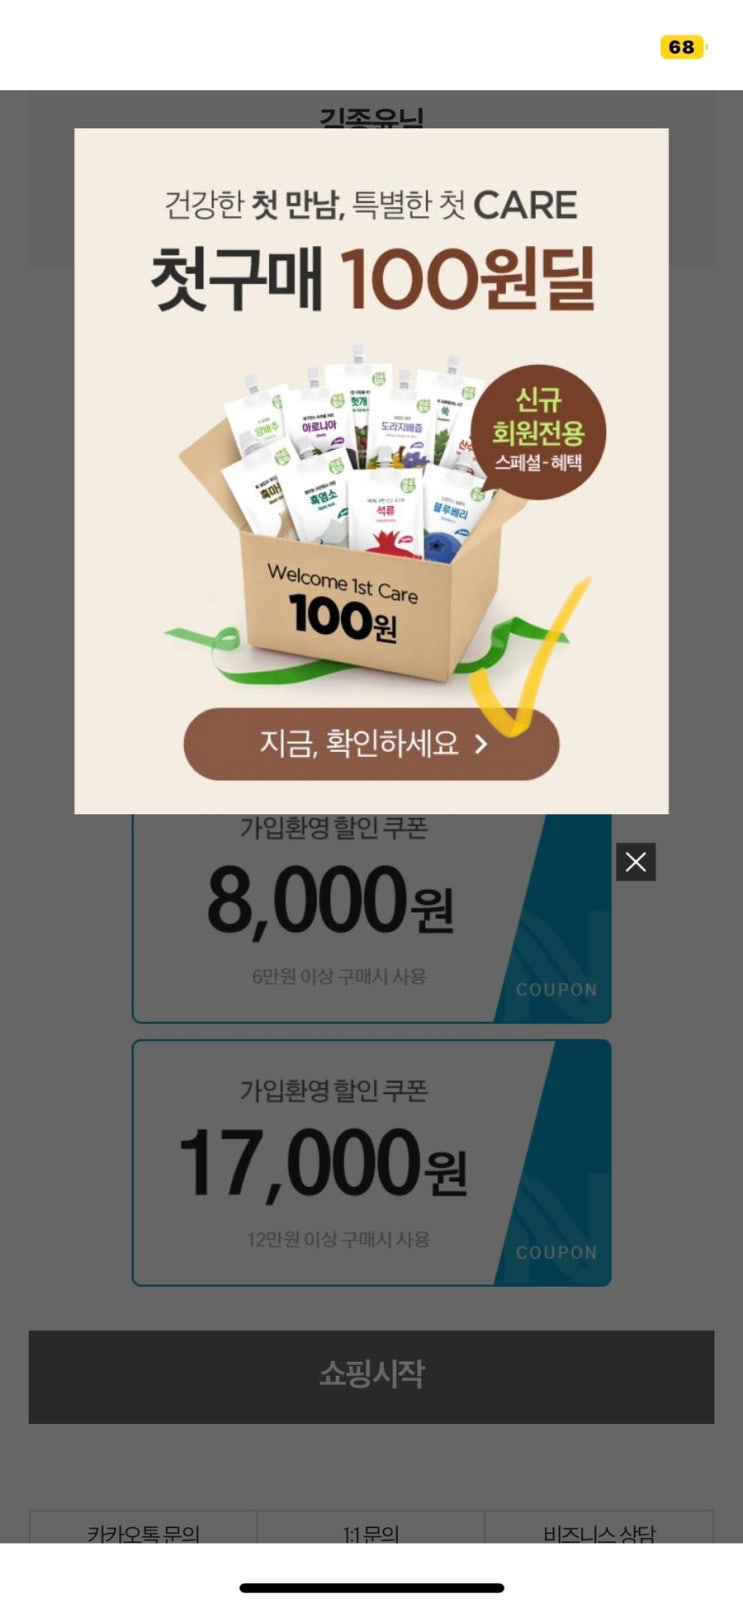 천호엔케어 앱테크 신규가입 15,000원 적립금 + 100원딜 (페이코 카드 발급 무료)